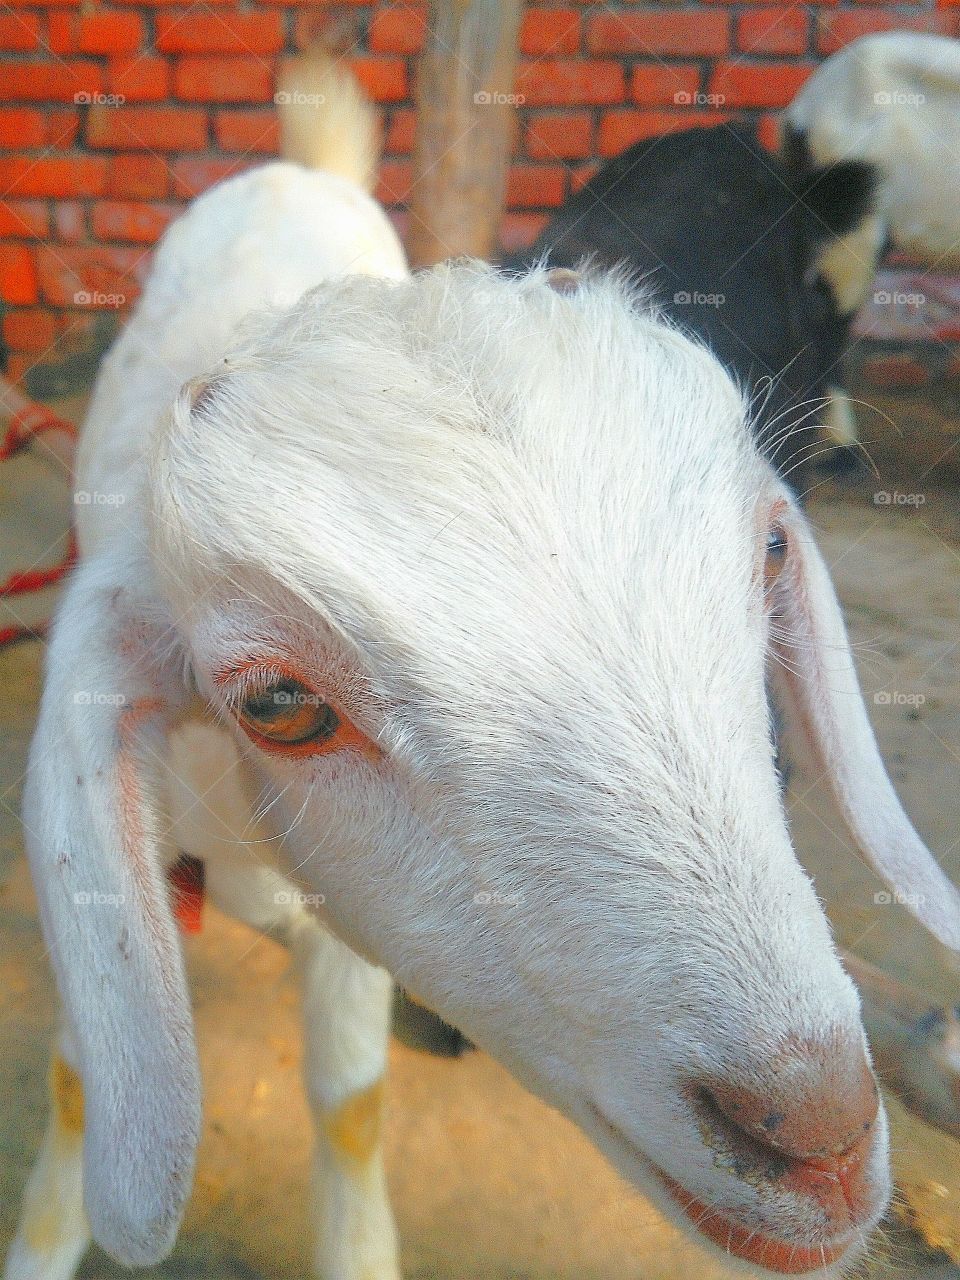 cute goat looking very beautiful